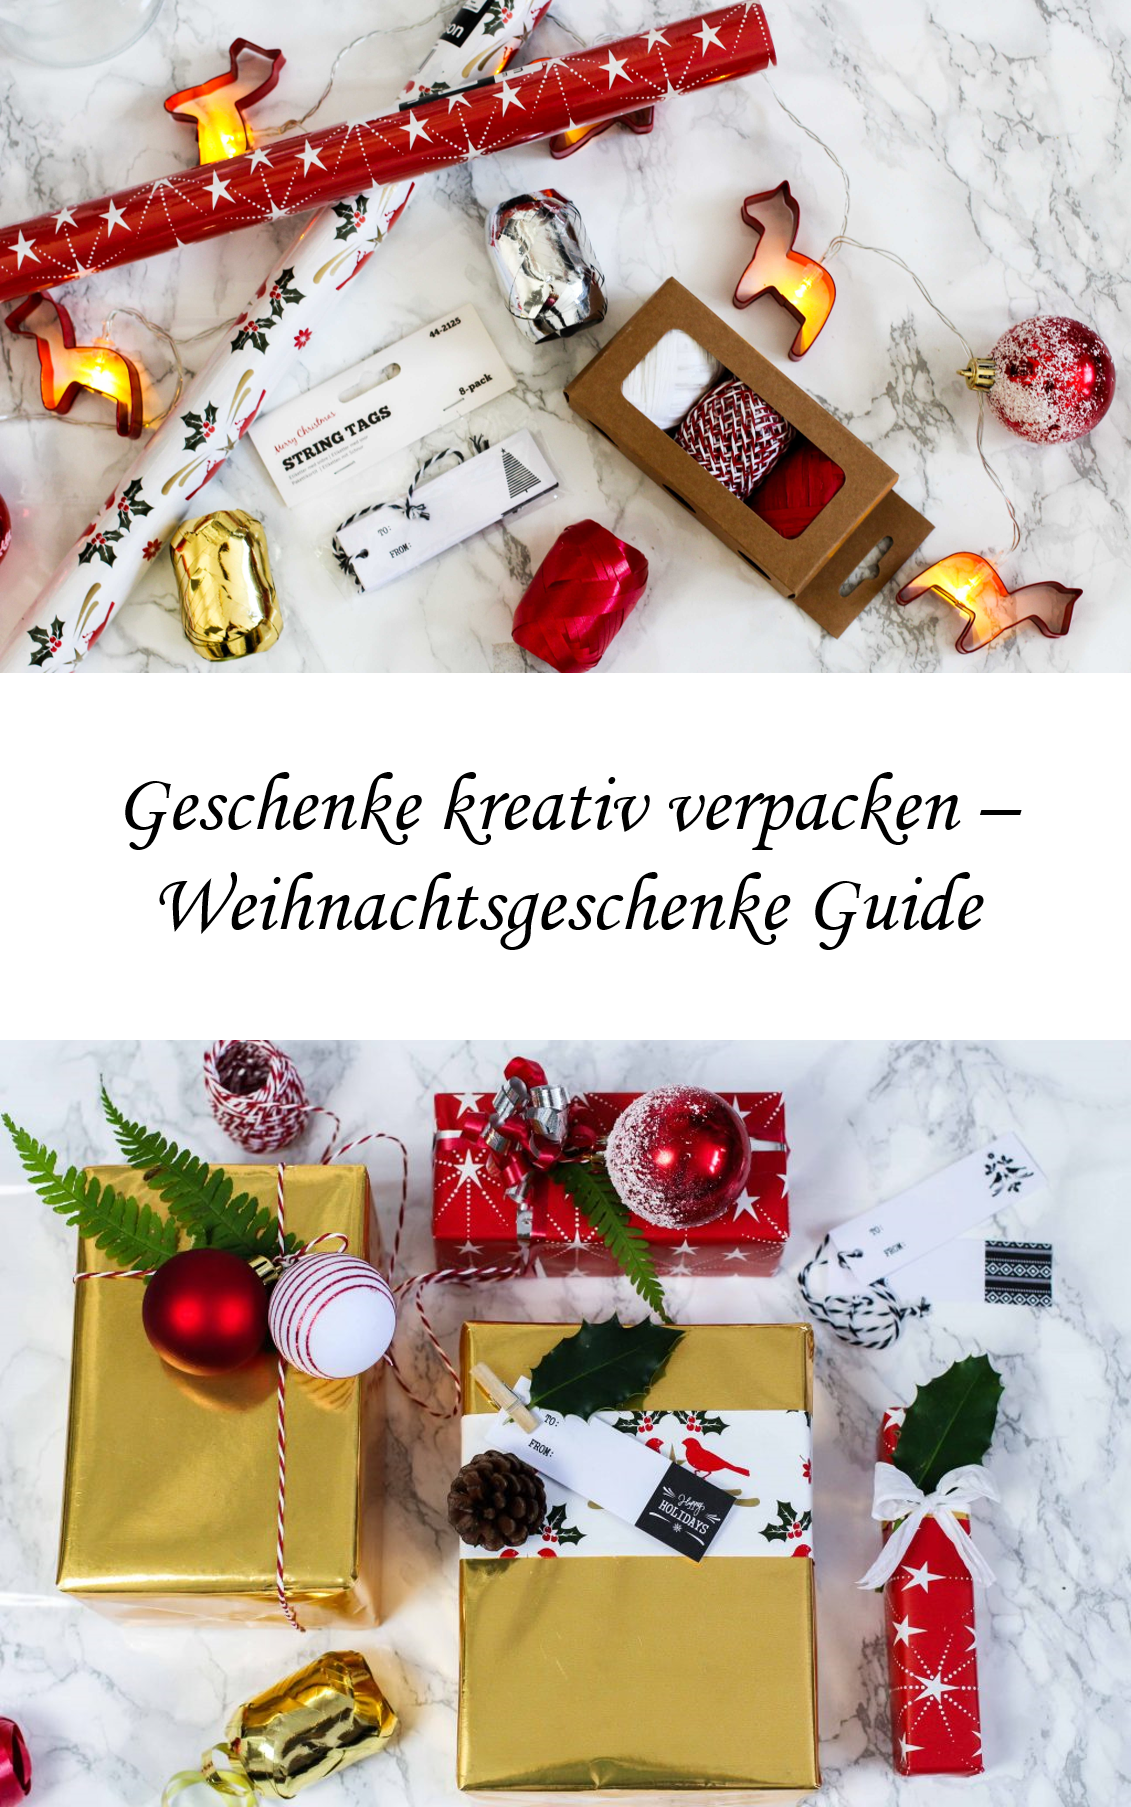 Geschenke-kreativ-einpacken-Weihnachten-Kreativer-Christmas-Gift-Wrapping-Guide-Clas-Ohlson-Geschenkpapier-Geschenk-Ideen-Dekoration gold weiß rot